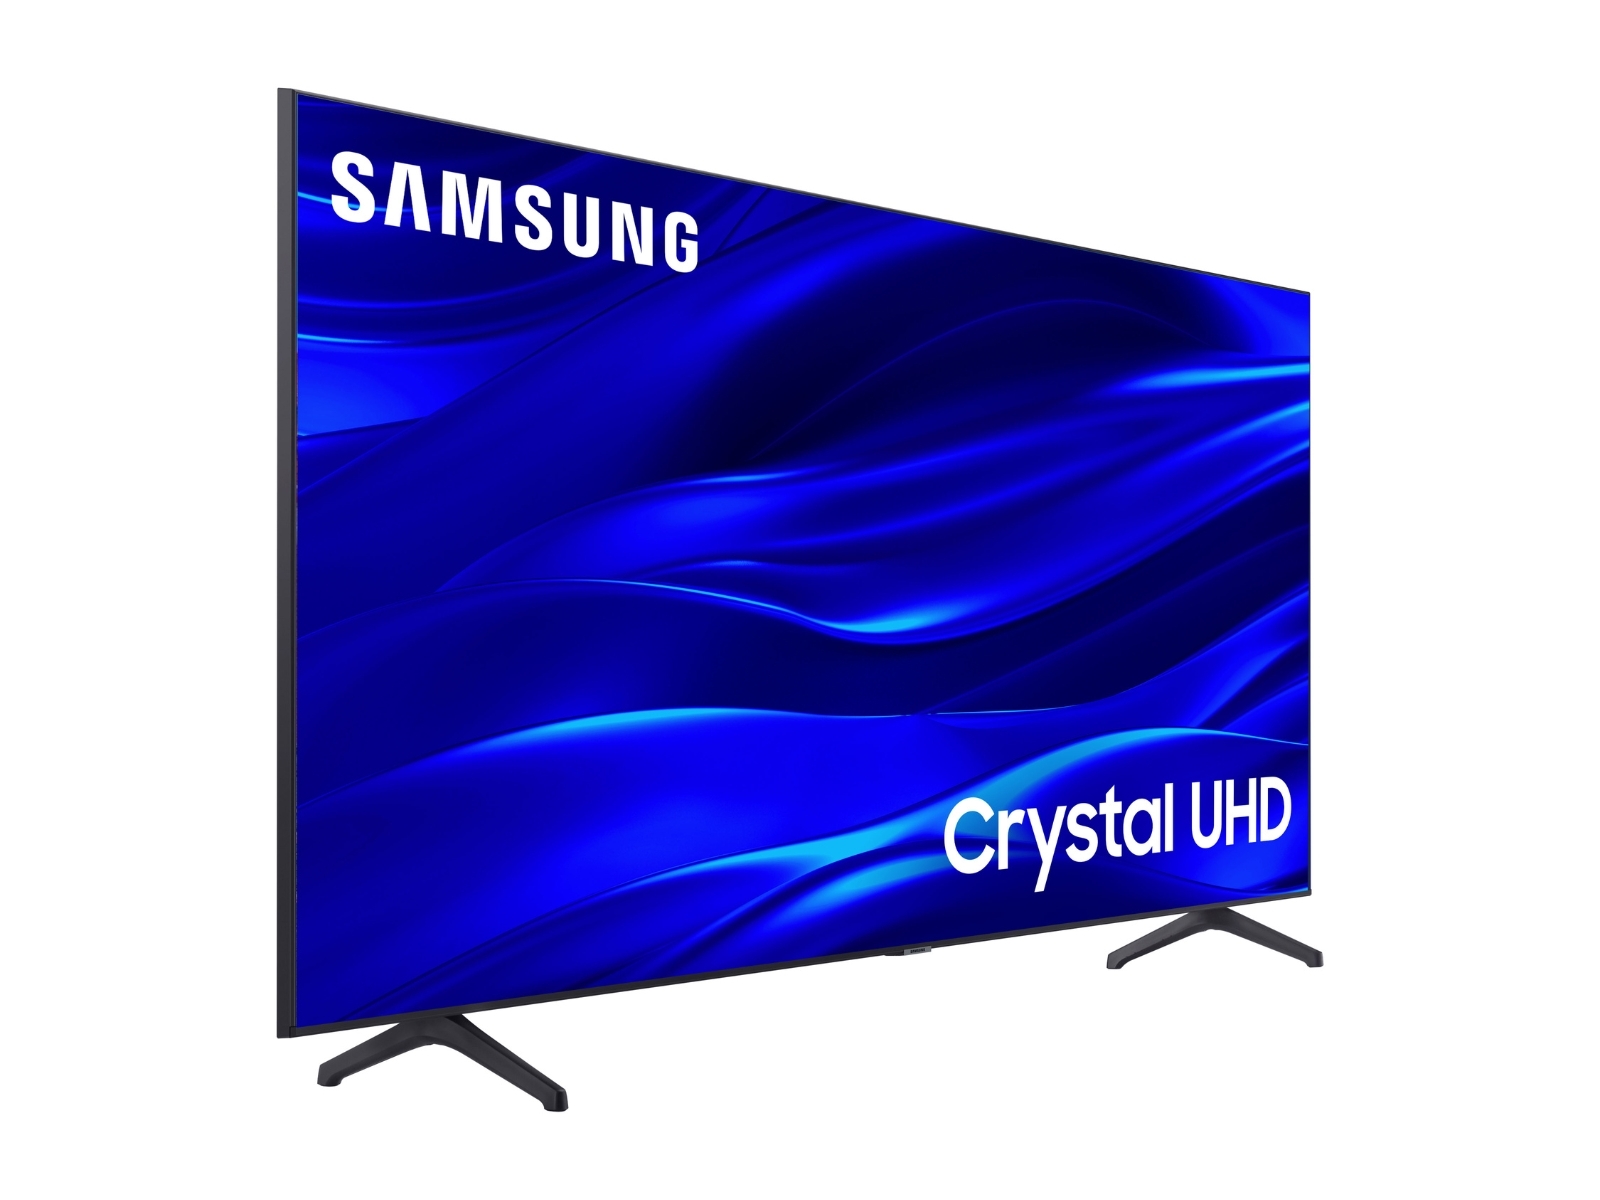 Detallado rechazo Malgastar 85" Clase TU690T Crystal UHD 4K Smart TV alimentado por televisores Tizen™  - UN85TU690TFXZA | Samsung ES